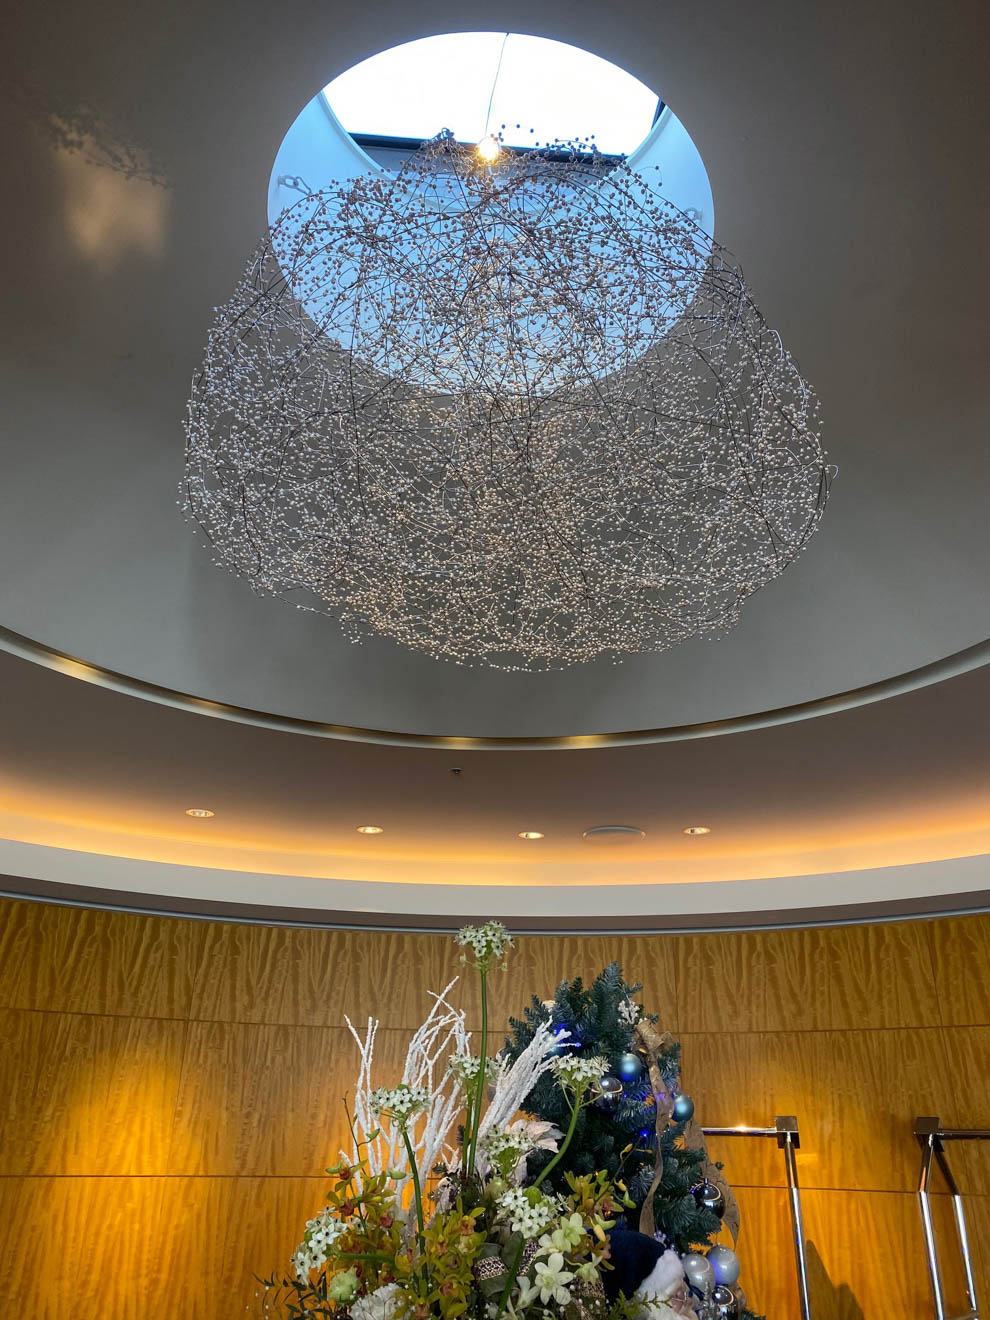 「ザ ベイスイート」のエントランスでは、約9000個もの真珠をあしらったシャンデリアがゲストを出迎える。